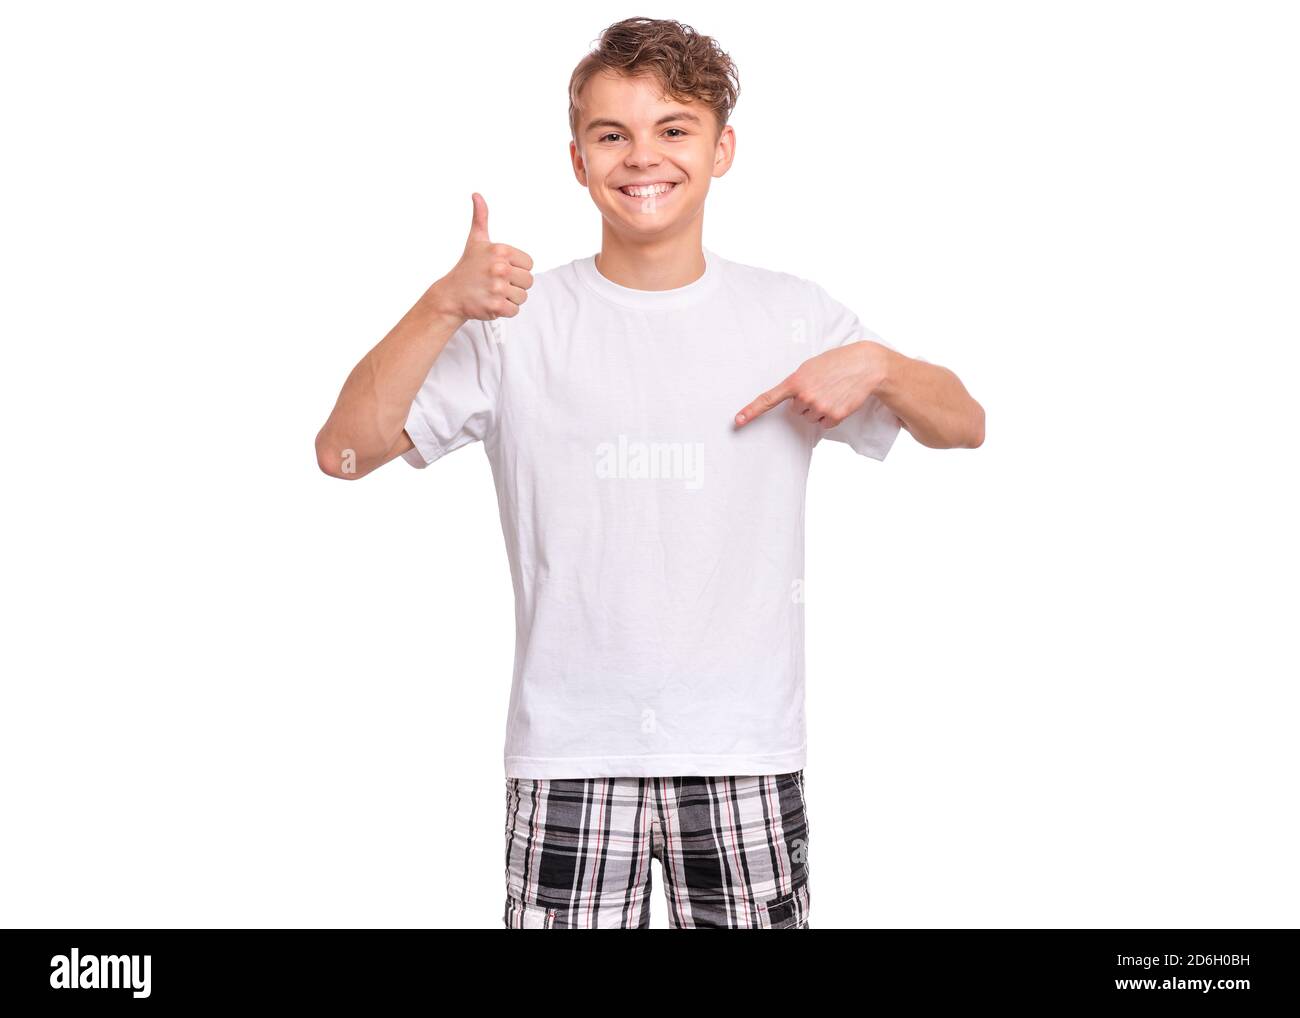 Cute teen boy che punta in su, gesturing idea o facendo il gesto numero uno, isolato su sfondo bianco Foto Stock